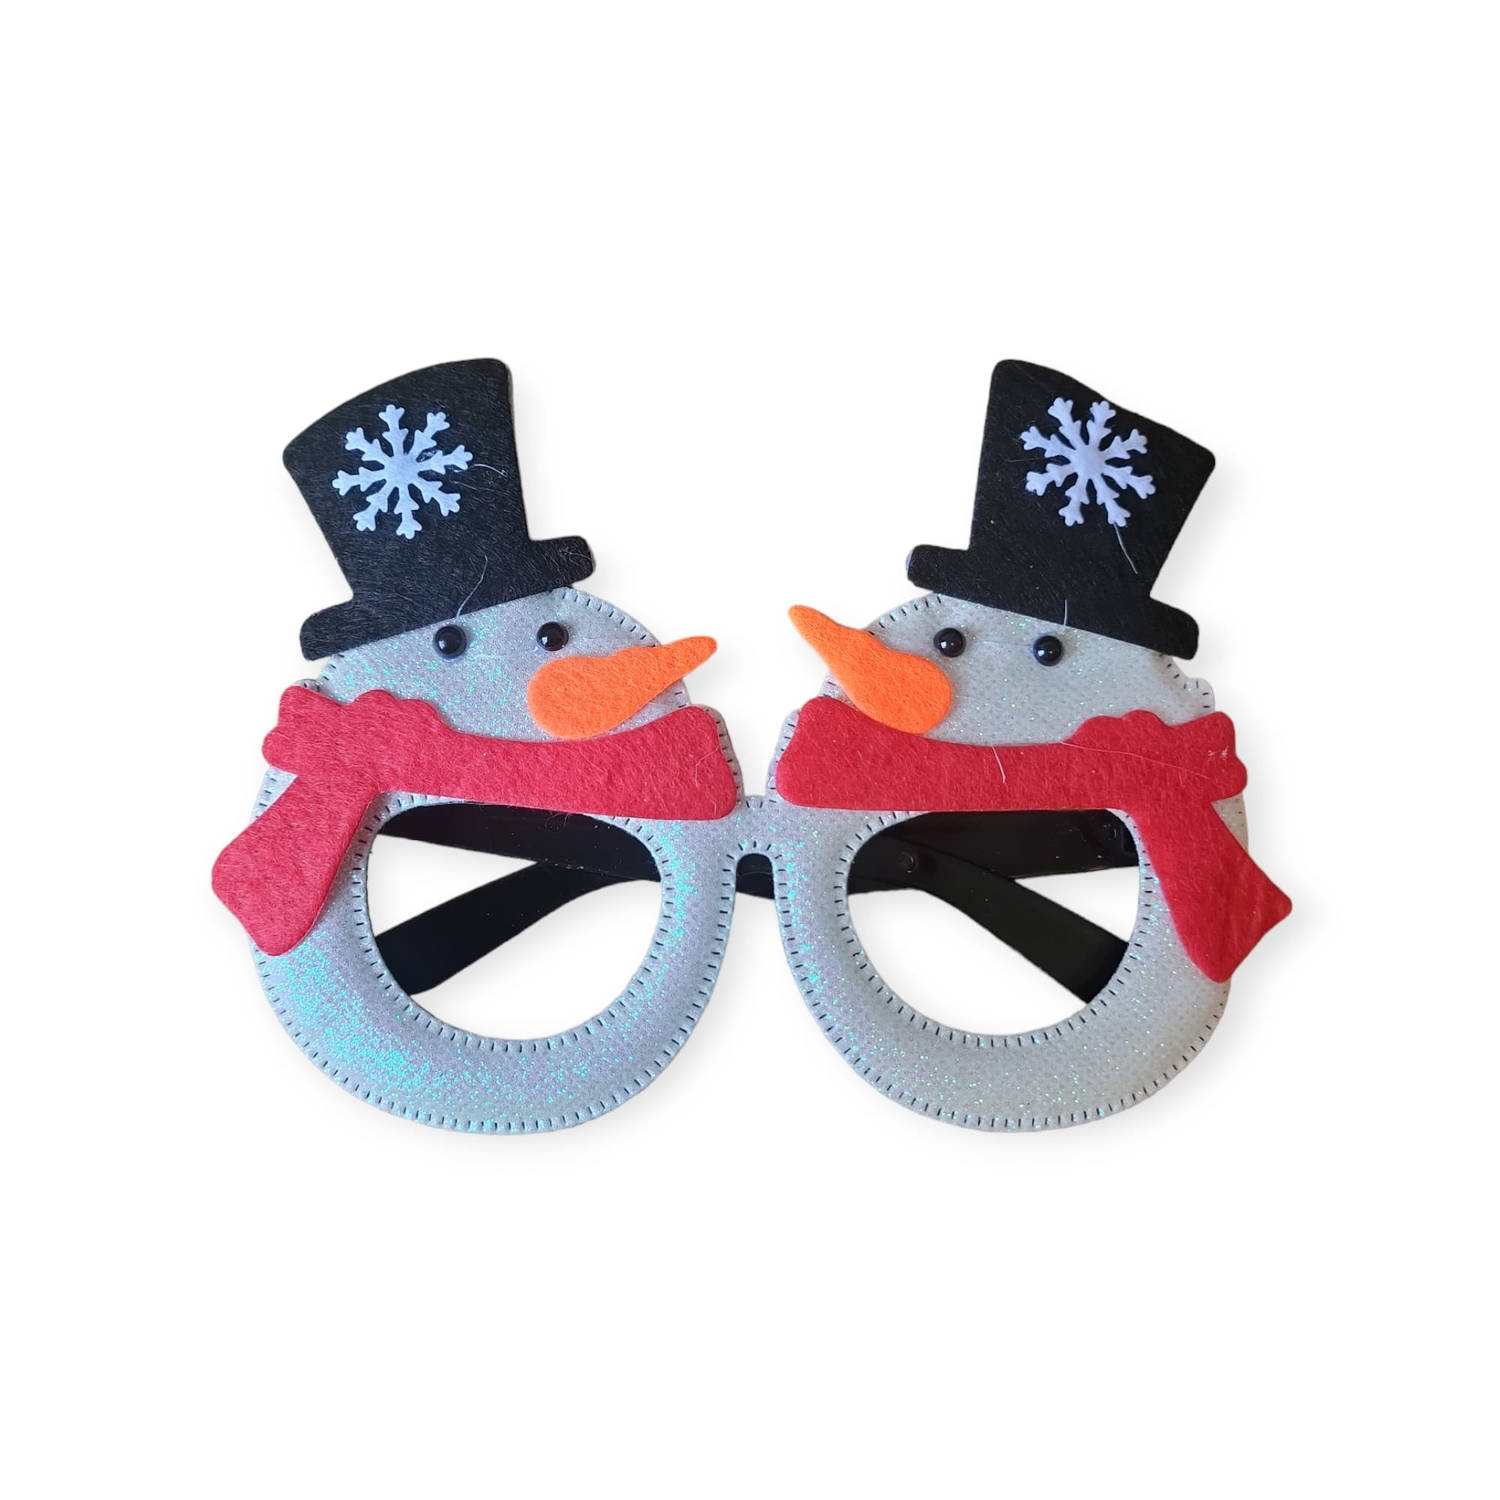 Horend Goed Kerstbril met sneeuwpoppen